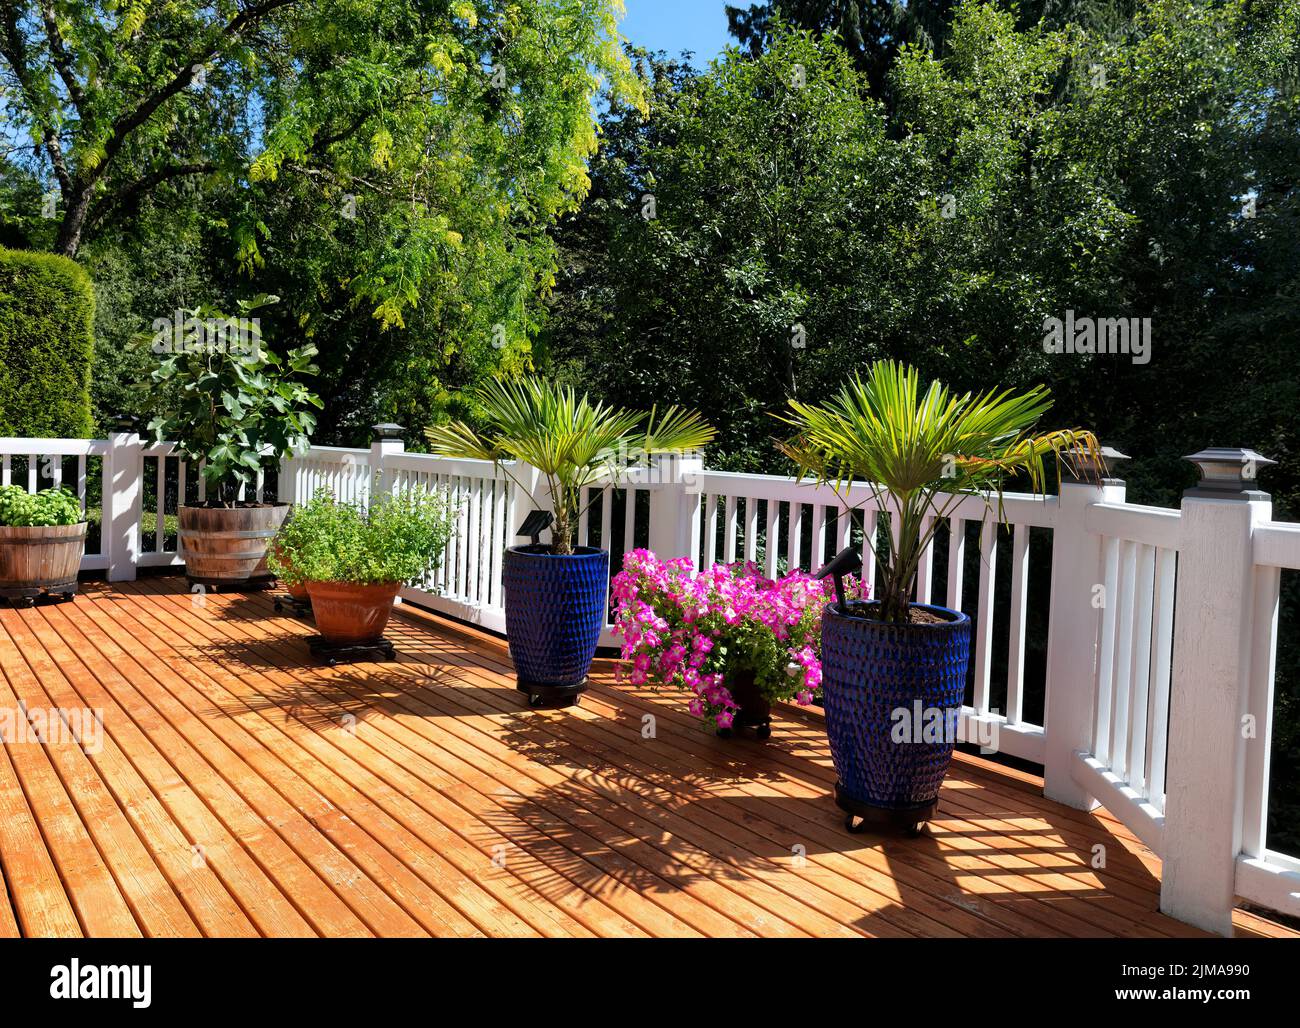 Jardín de la casa en una terraza de madera de cedro al aire libre durante el verano Foto de stock